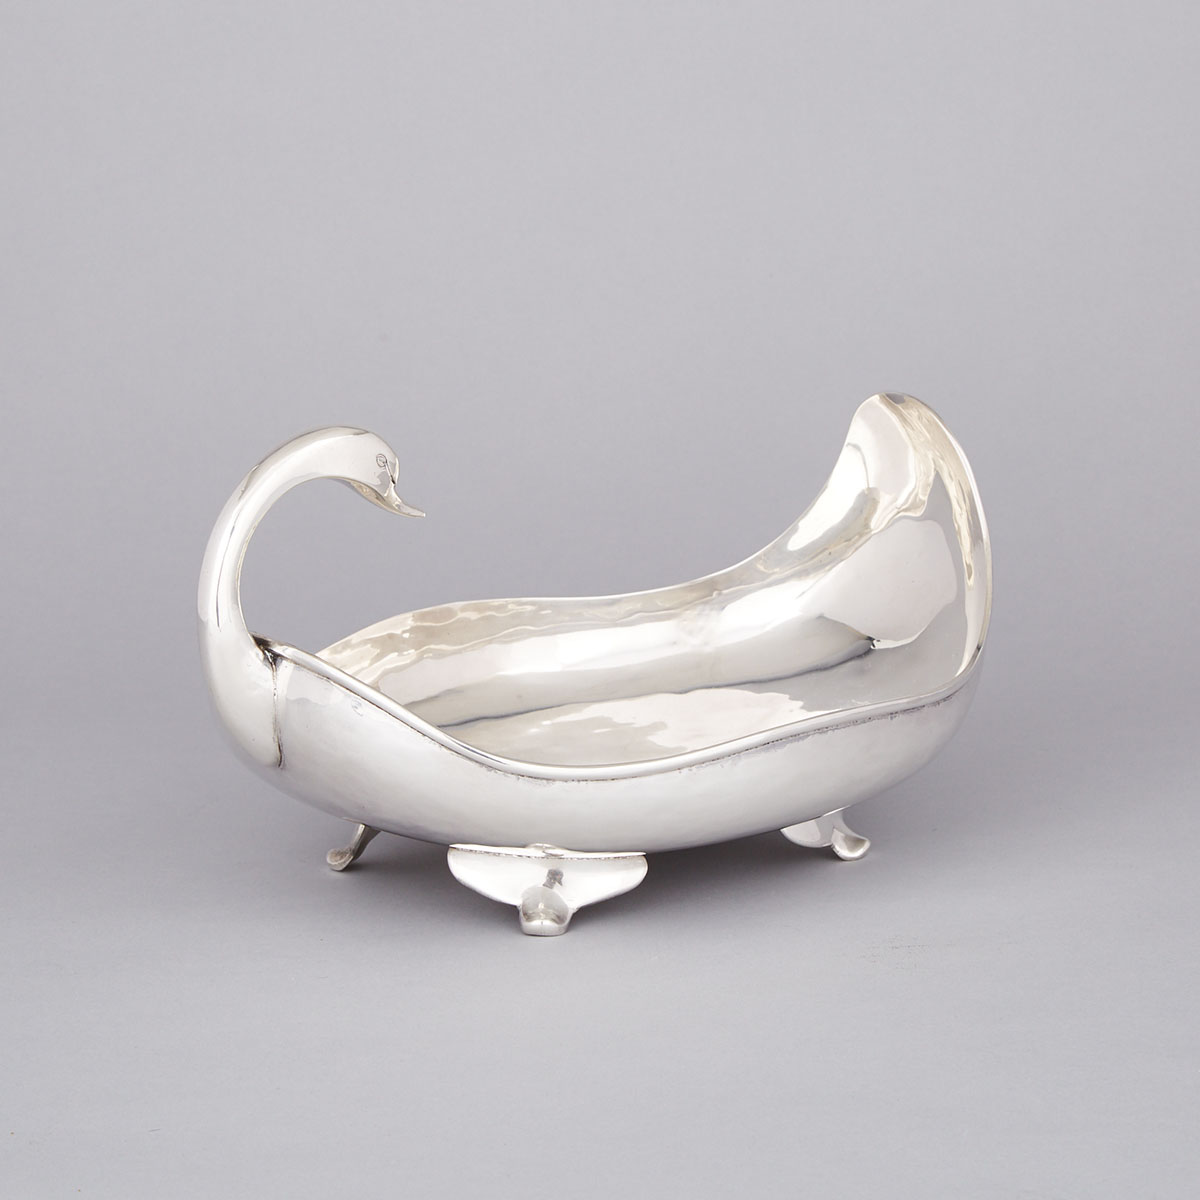 Mexican Silver Swan-Form Bowl, C. Zurita, Mexico City, 20th century